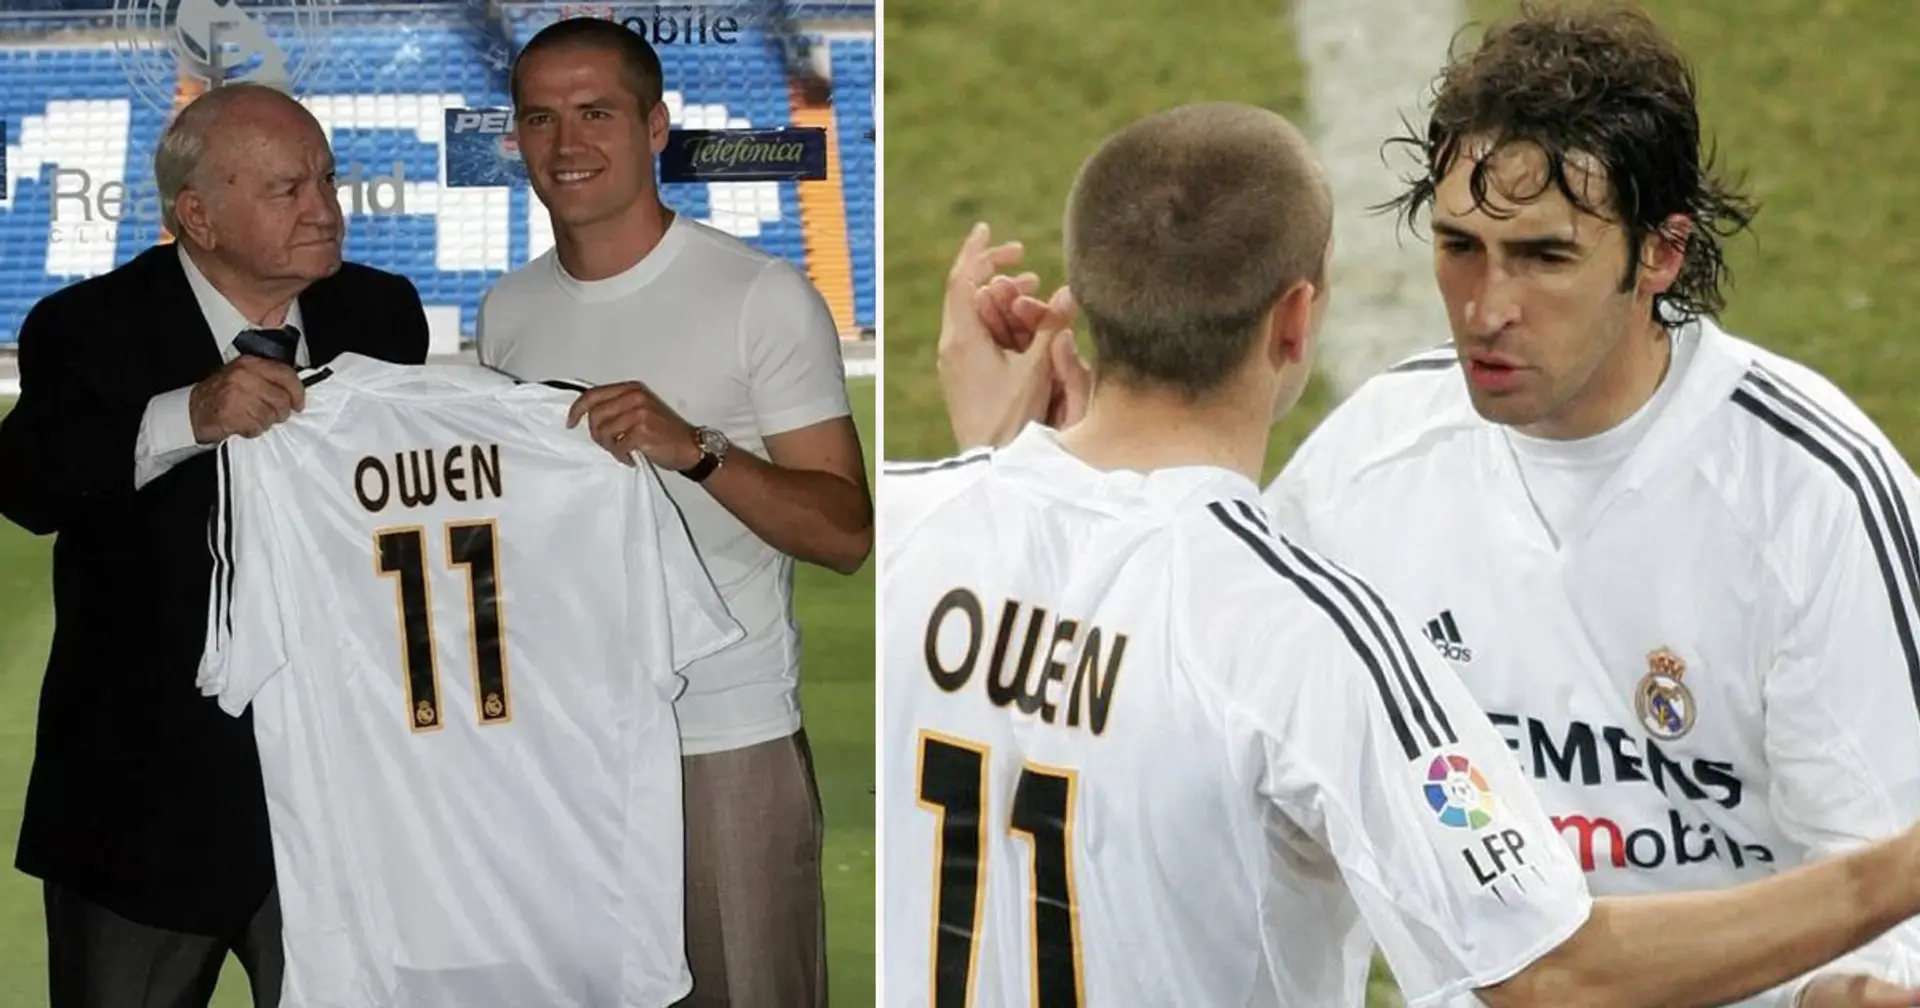 "Je vais les assommer !" : Owen révèle un plan arrogant pour Raul et Ronaldo lorsqu'il a rejoint le Real Madrid